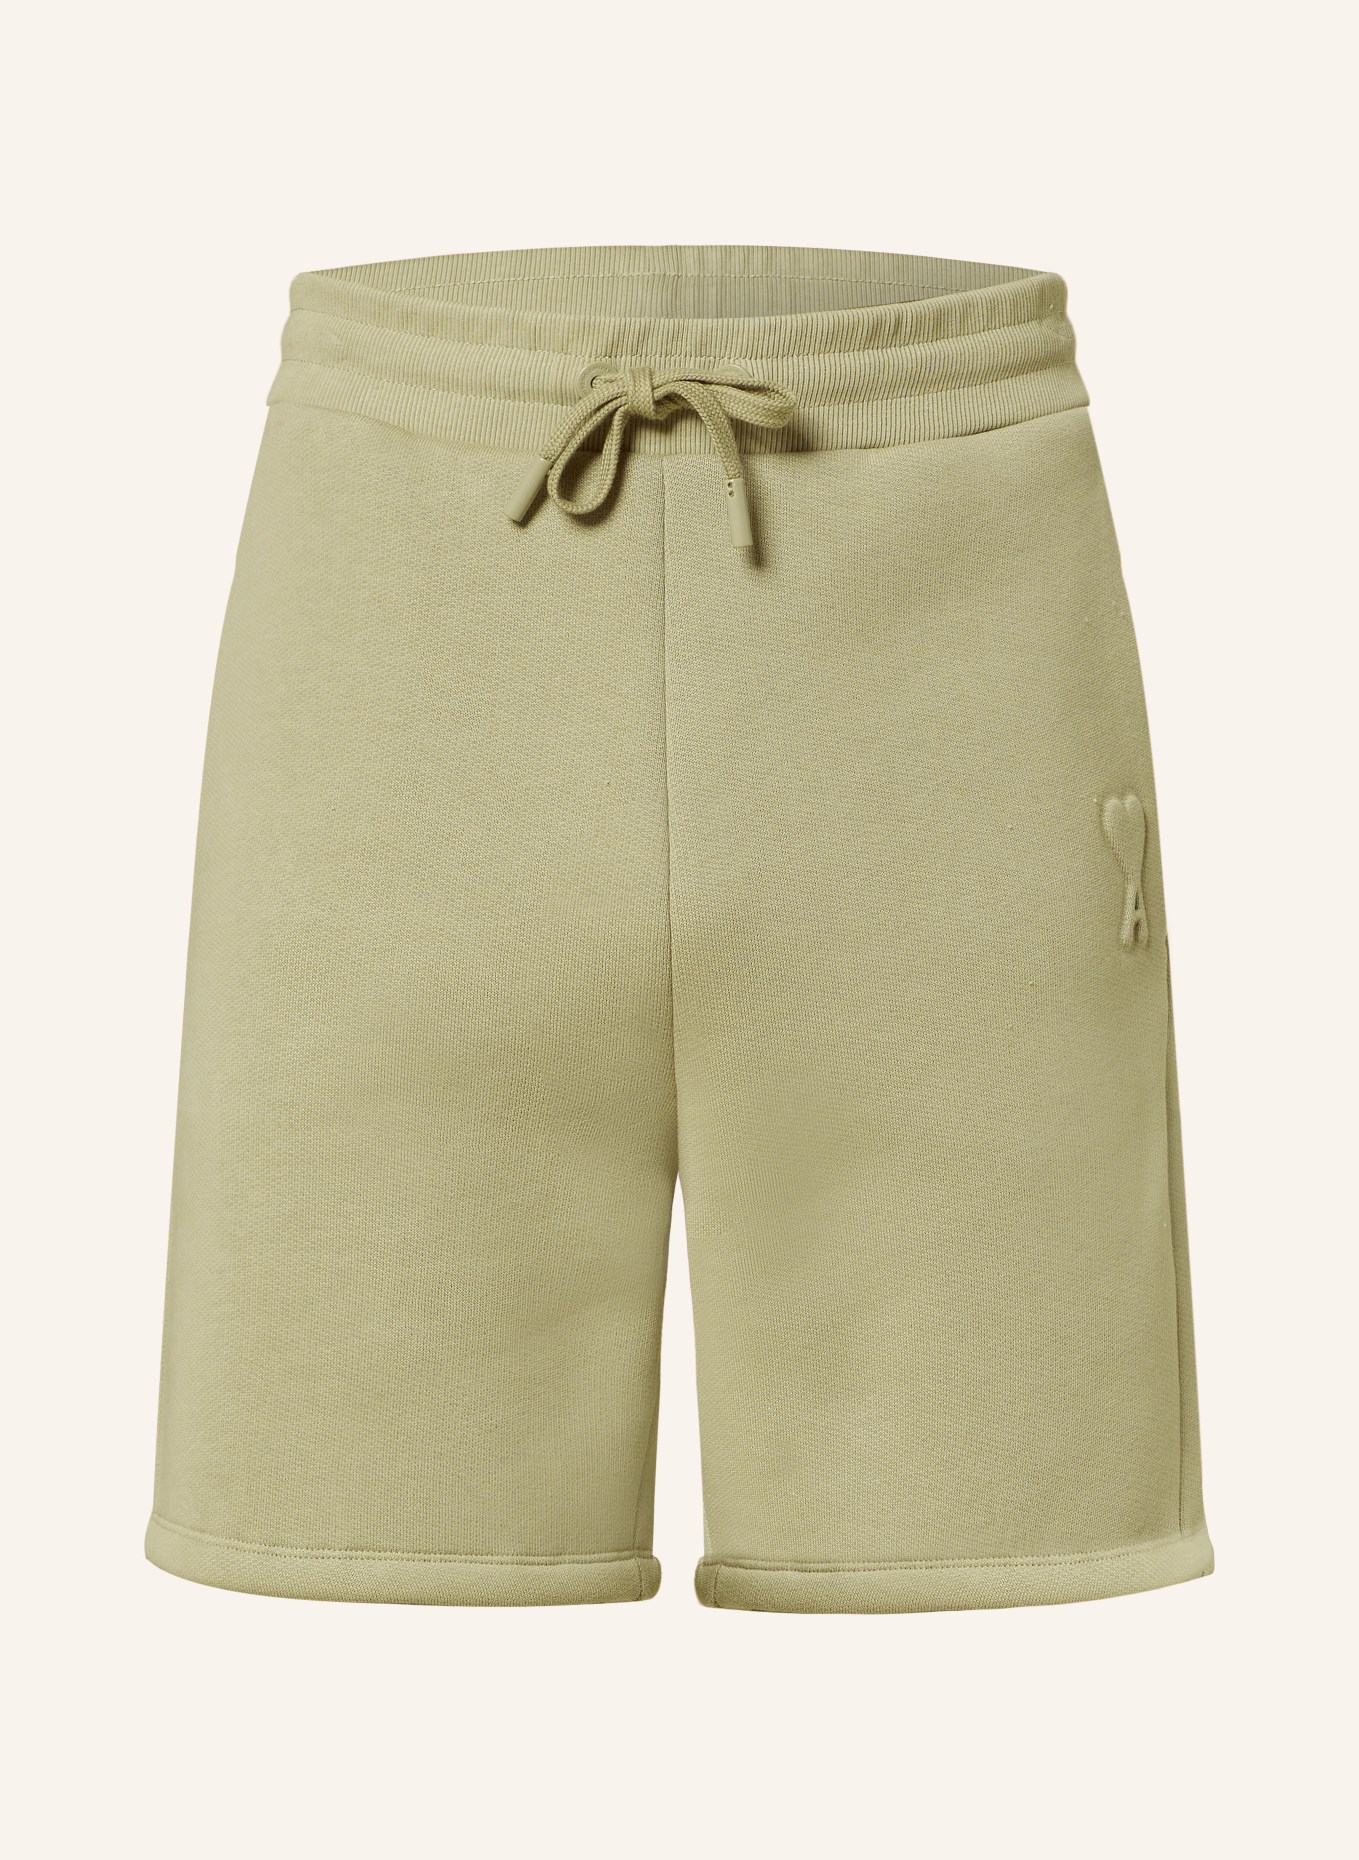 AMI PARIS Sweat shorts, Color: BEIGE (Image 1)